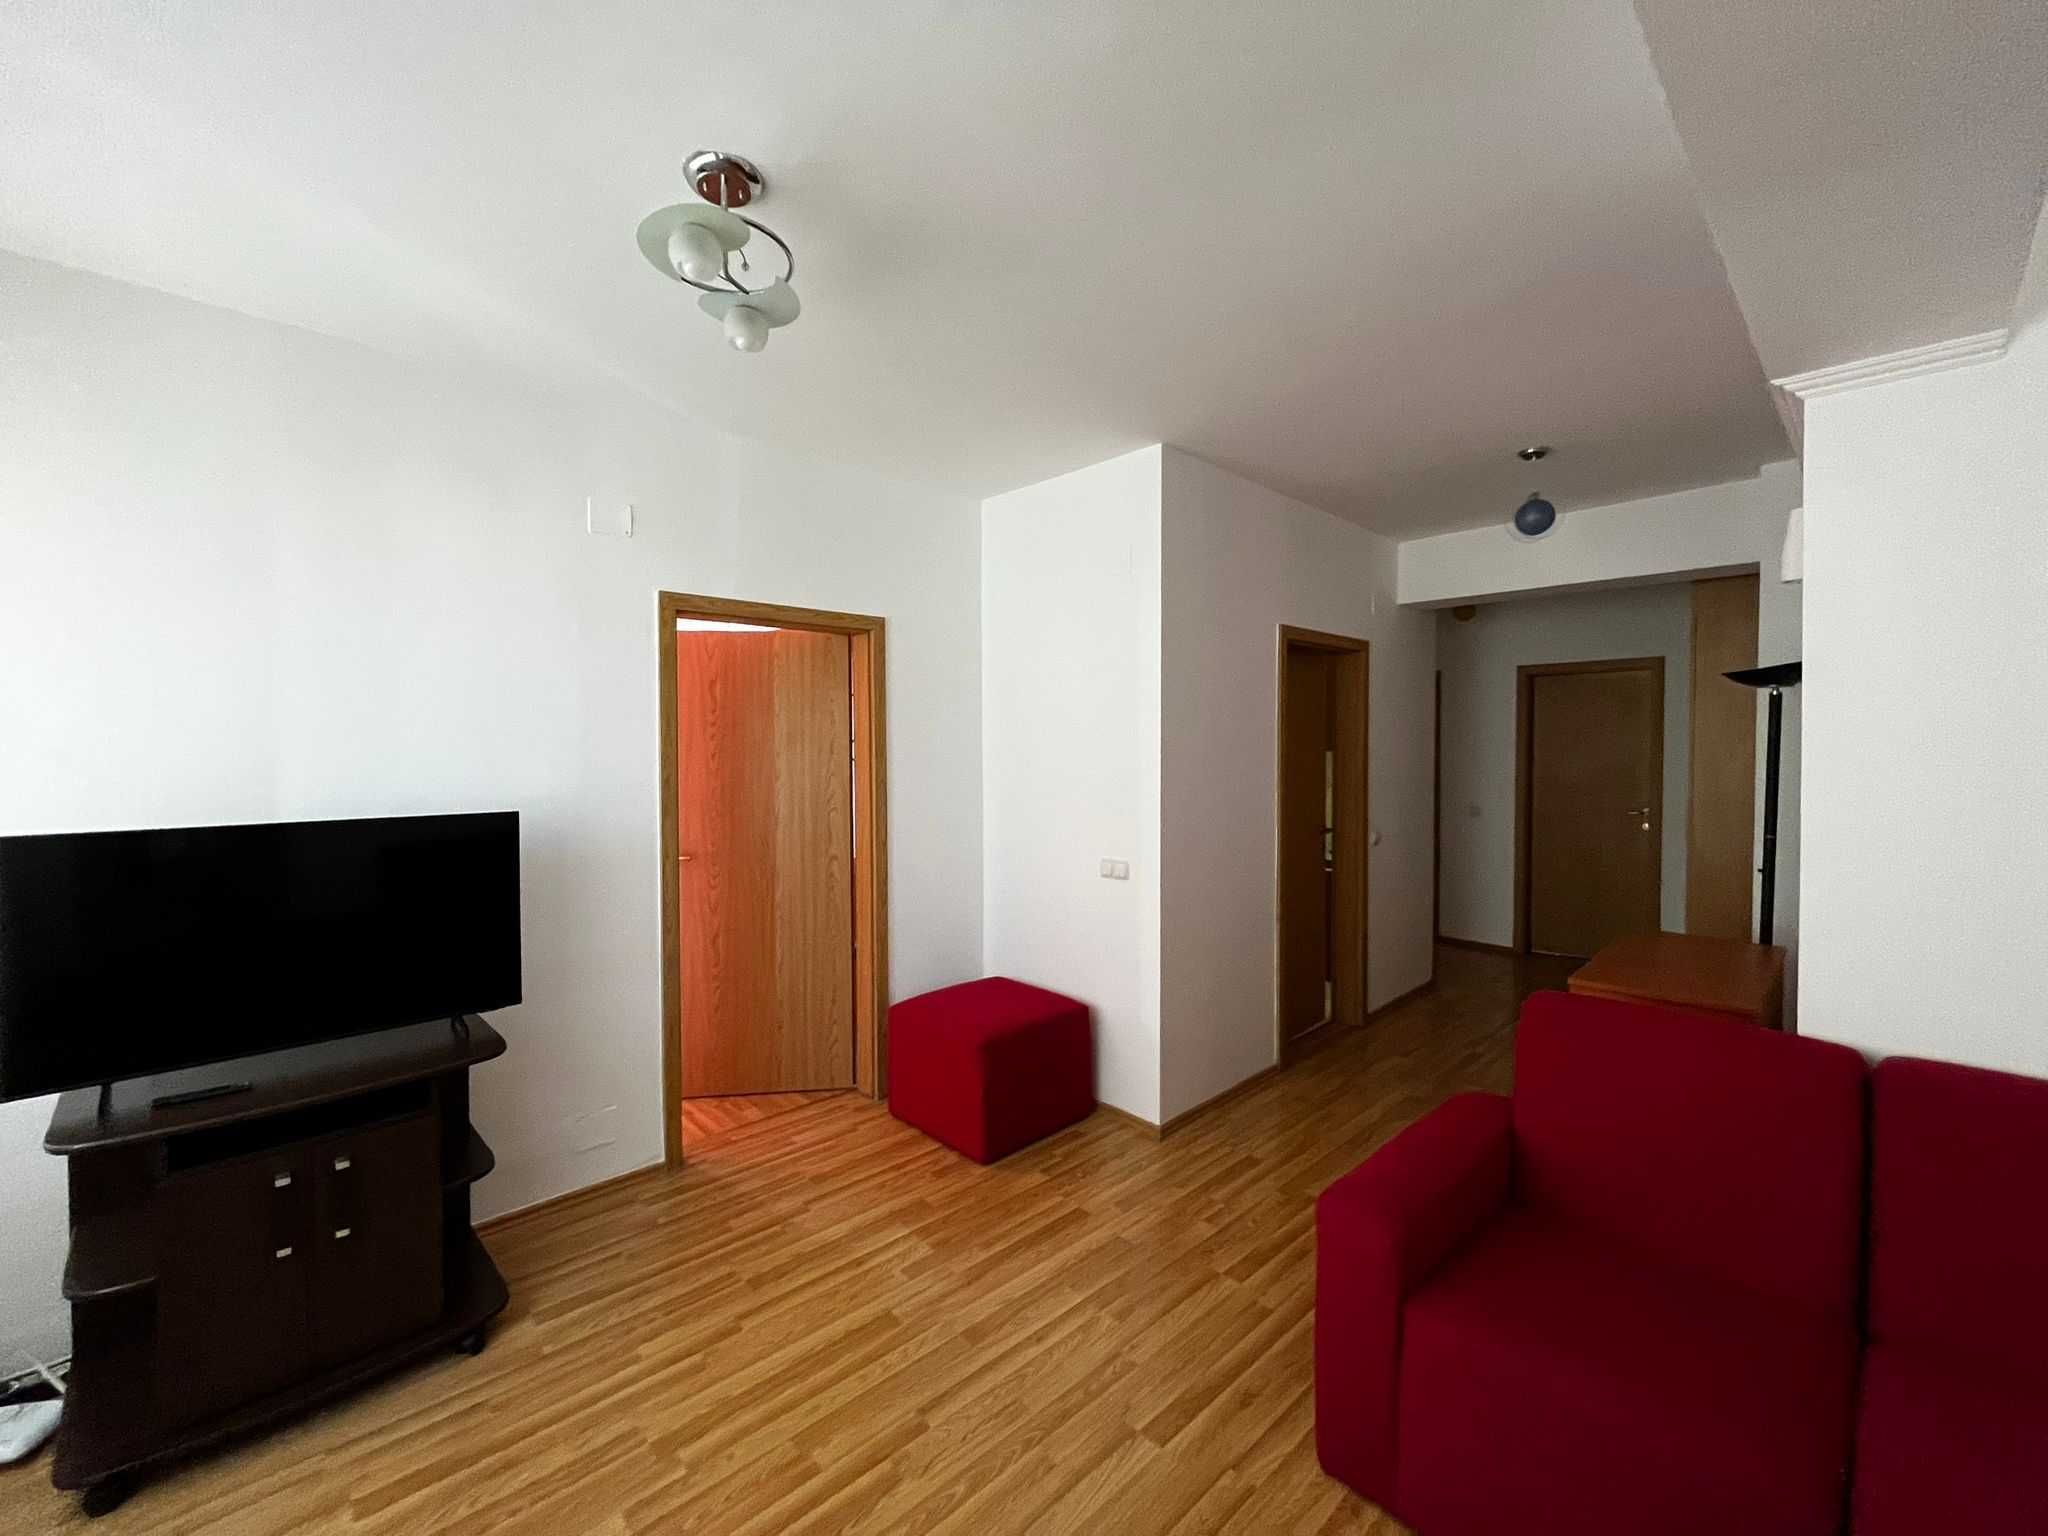 Apartament la bloc 3 camere, complet mobilat si utilat, str Lapusului